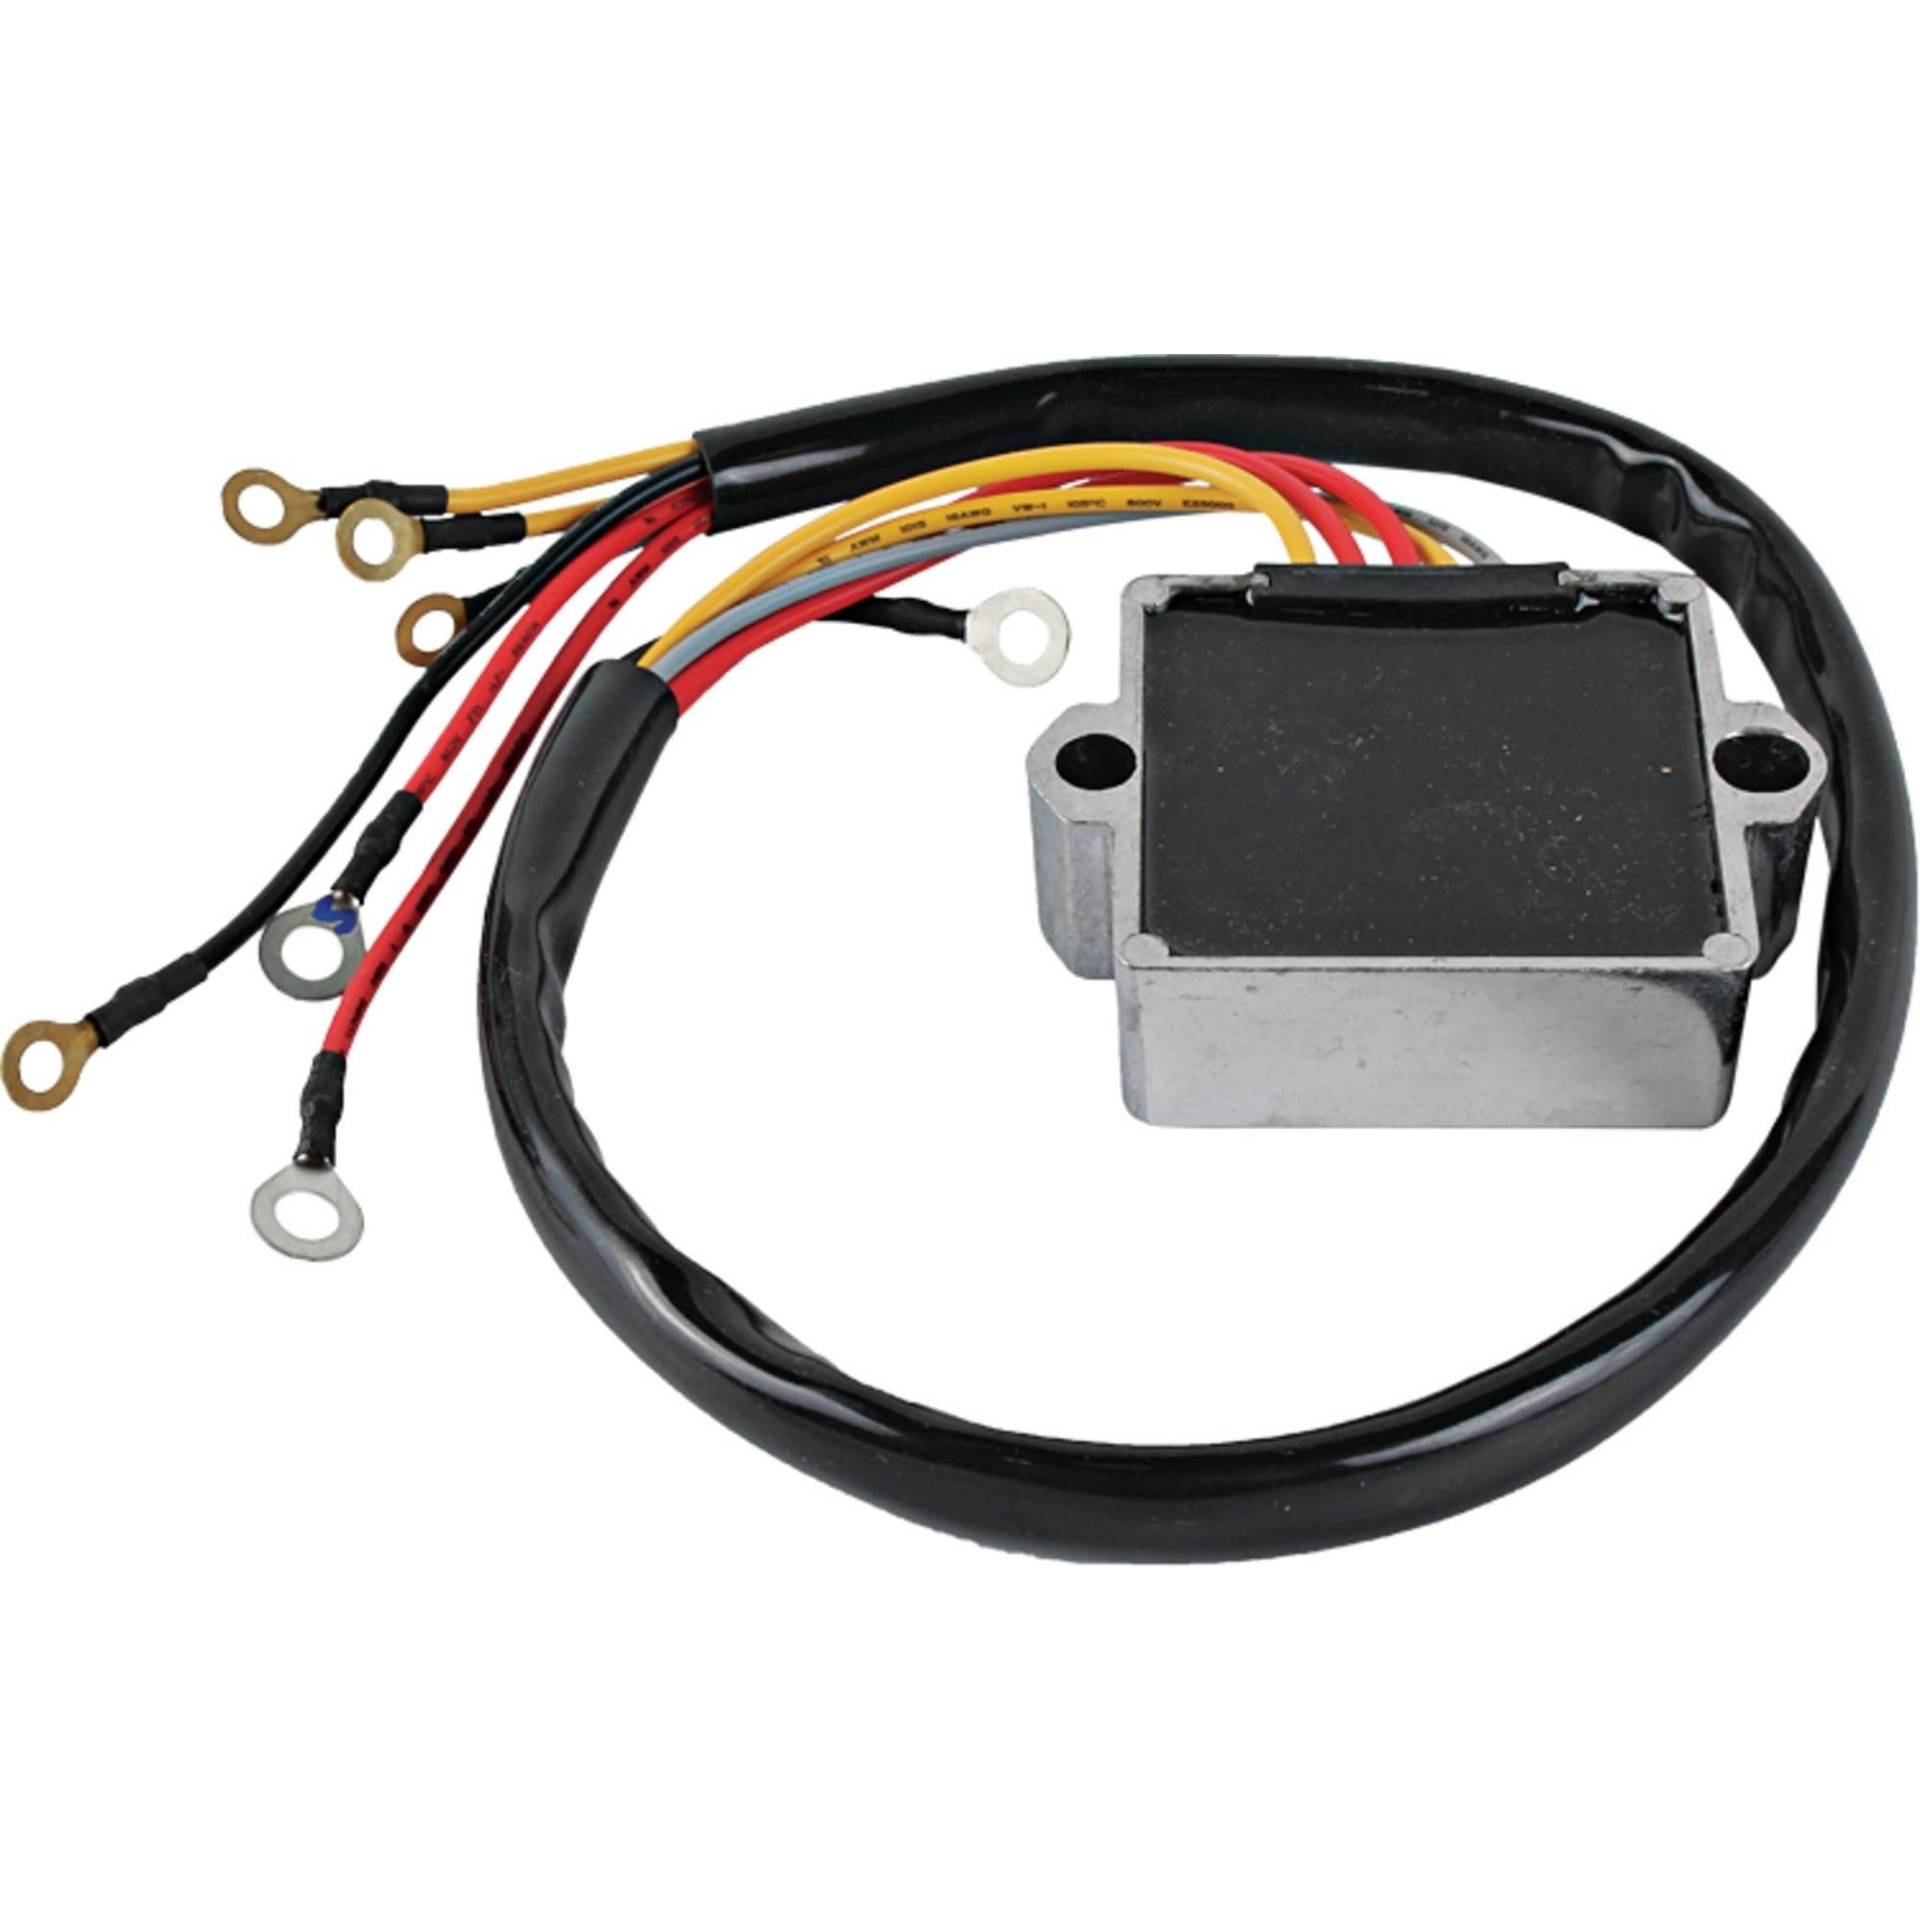 DB Elektrischer Gleichrichter/Regler AMR6005 kompatibel mit Temco TM-RE-216, Sierra Marine 18-5741, Mercury Marine 815279-1, 815279A2 von DB Electrical